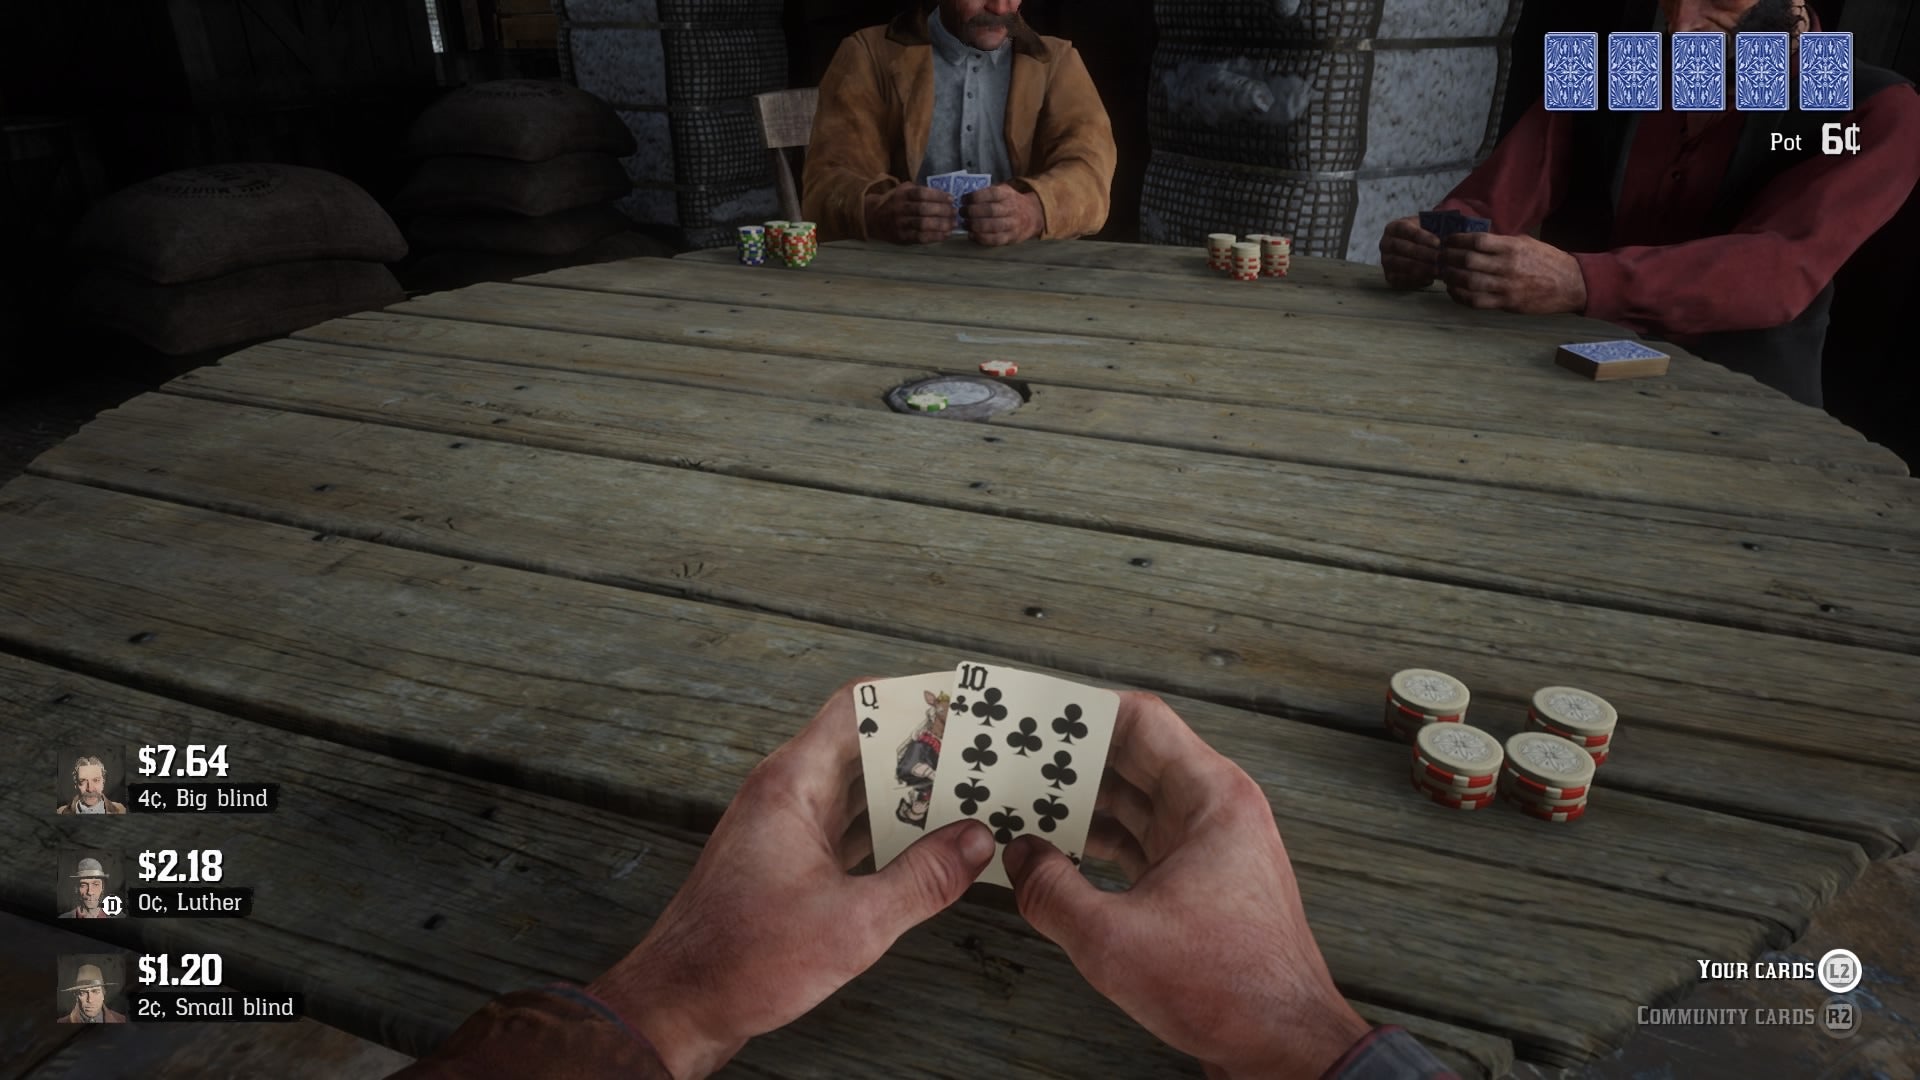 snave Rastløs deadlock Red Dead Redemption 2 poker is the best poker | VG247